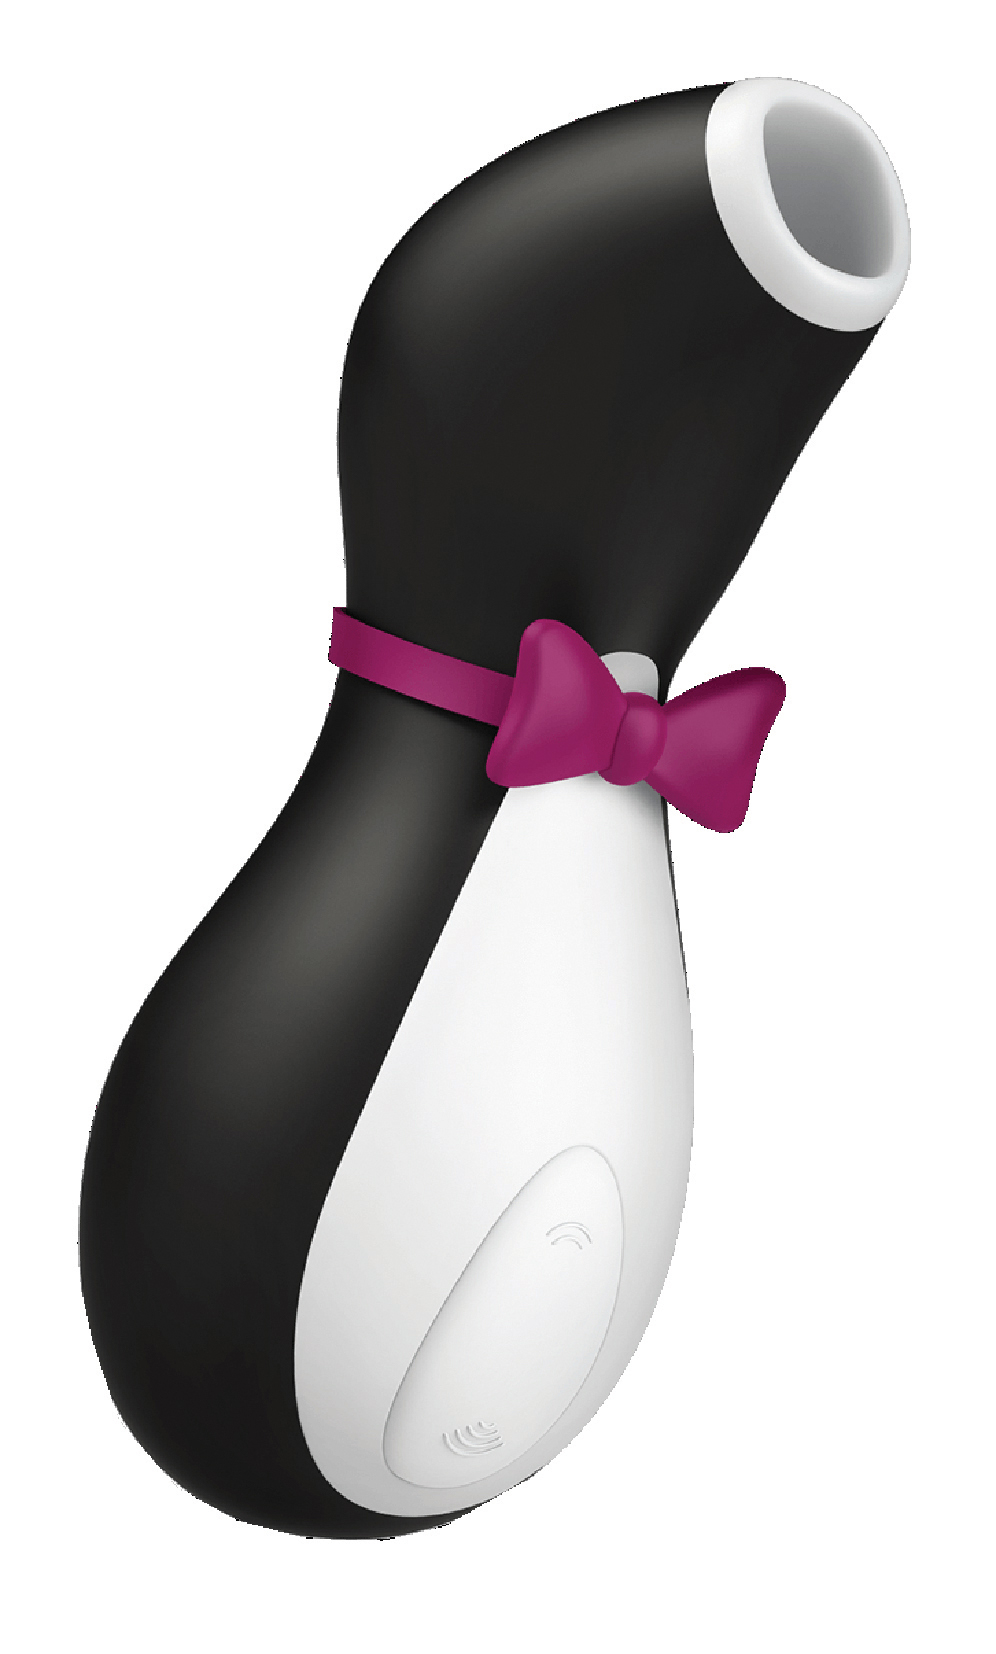 SATISFYER Pro Penguin Next Generation